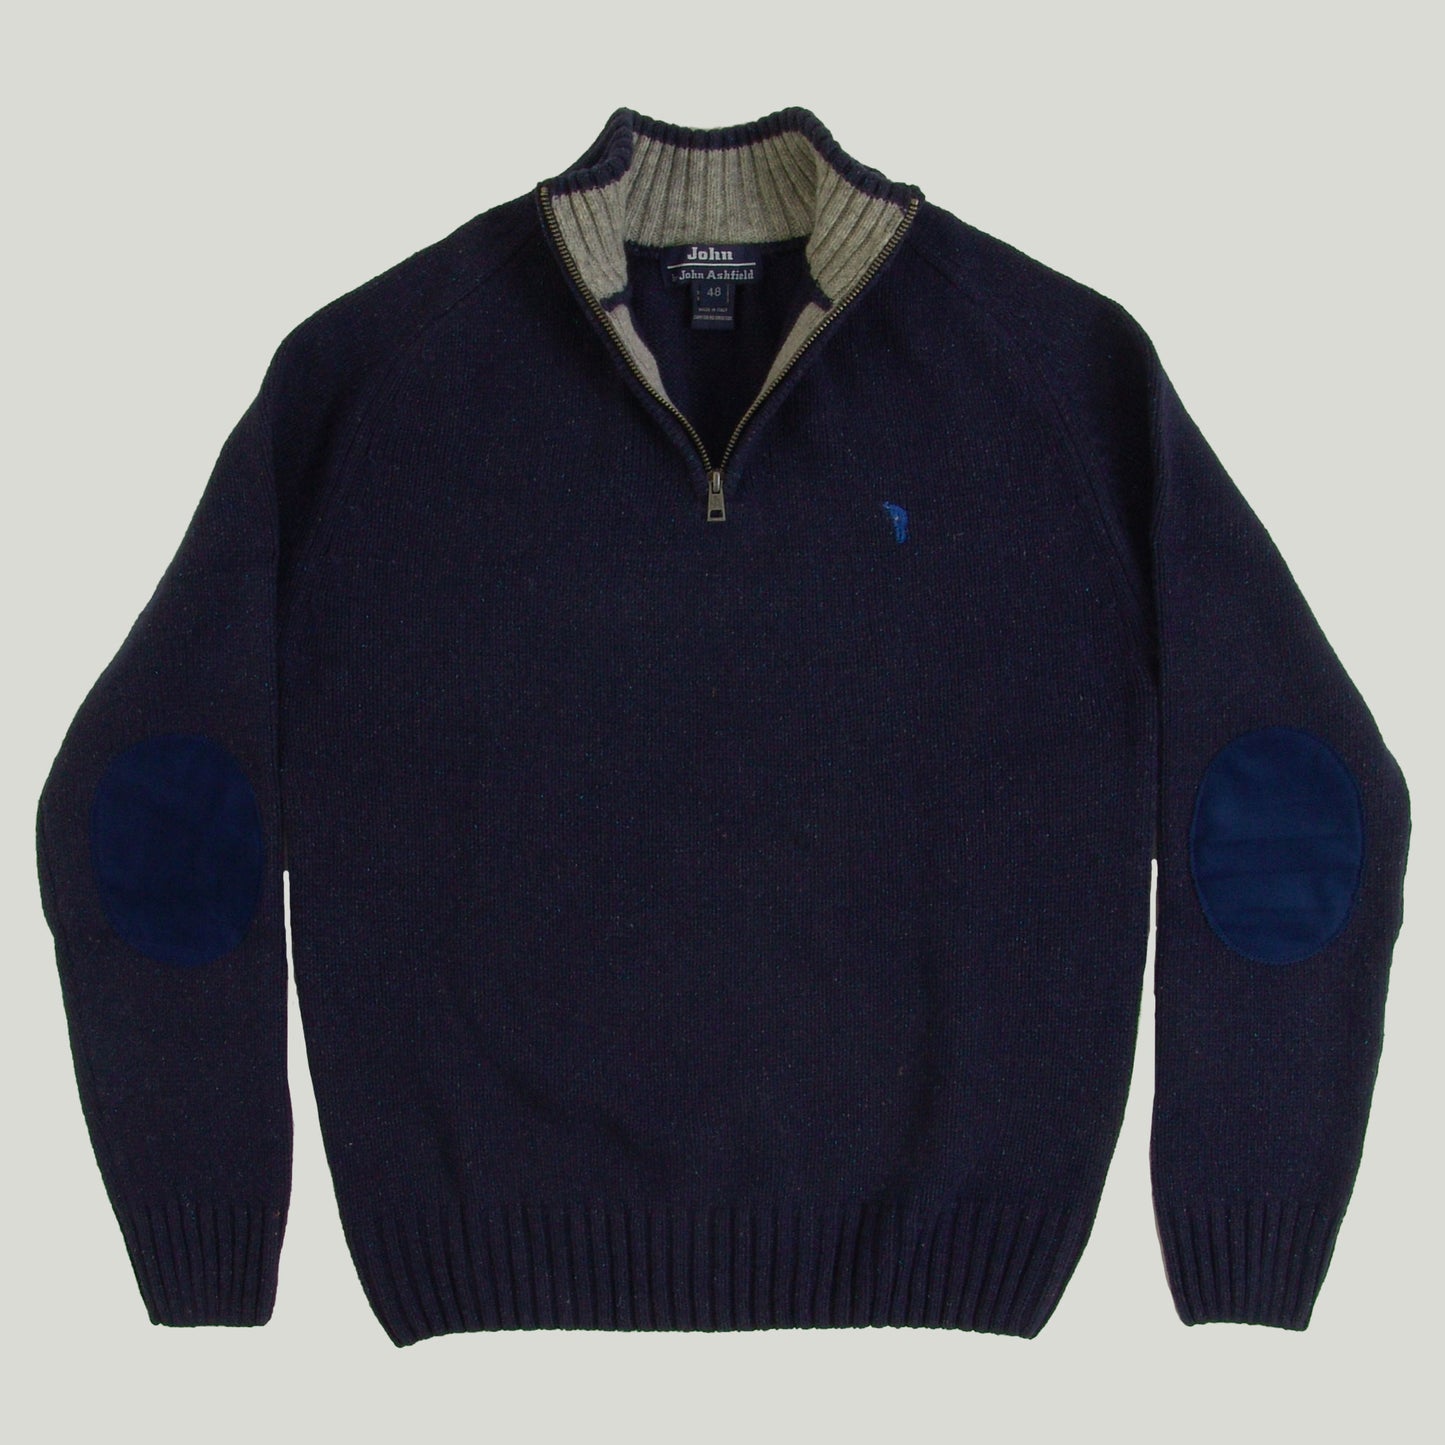 Men's Half-zipper Sweater